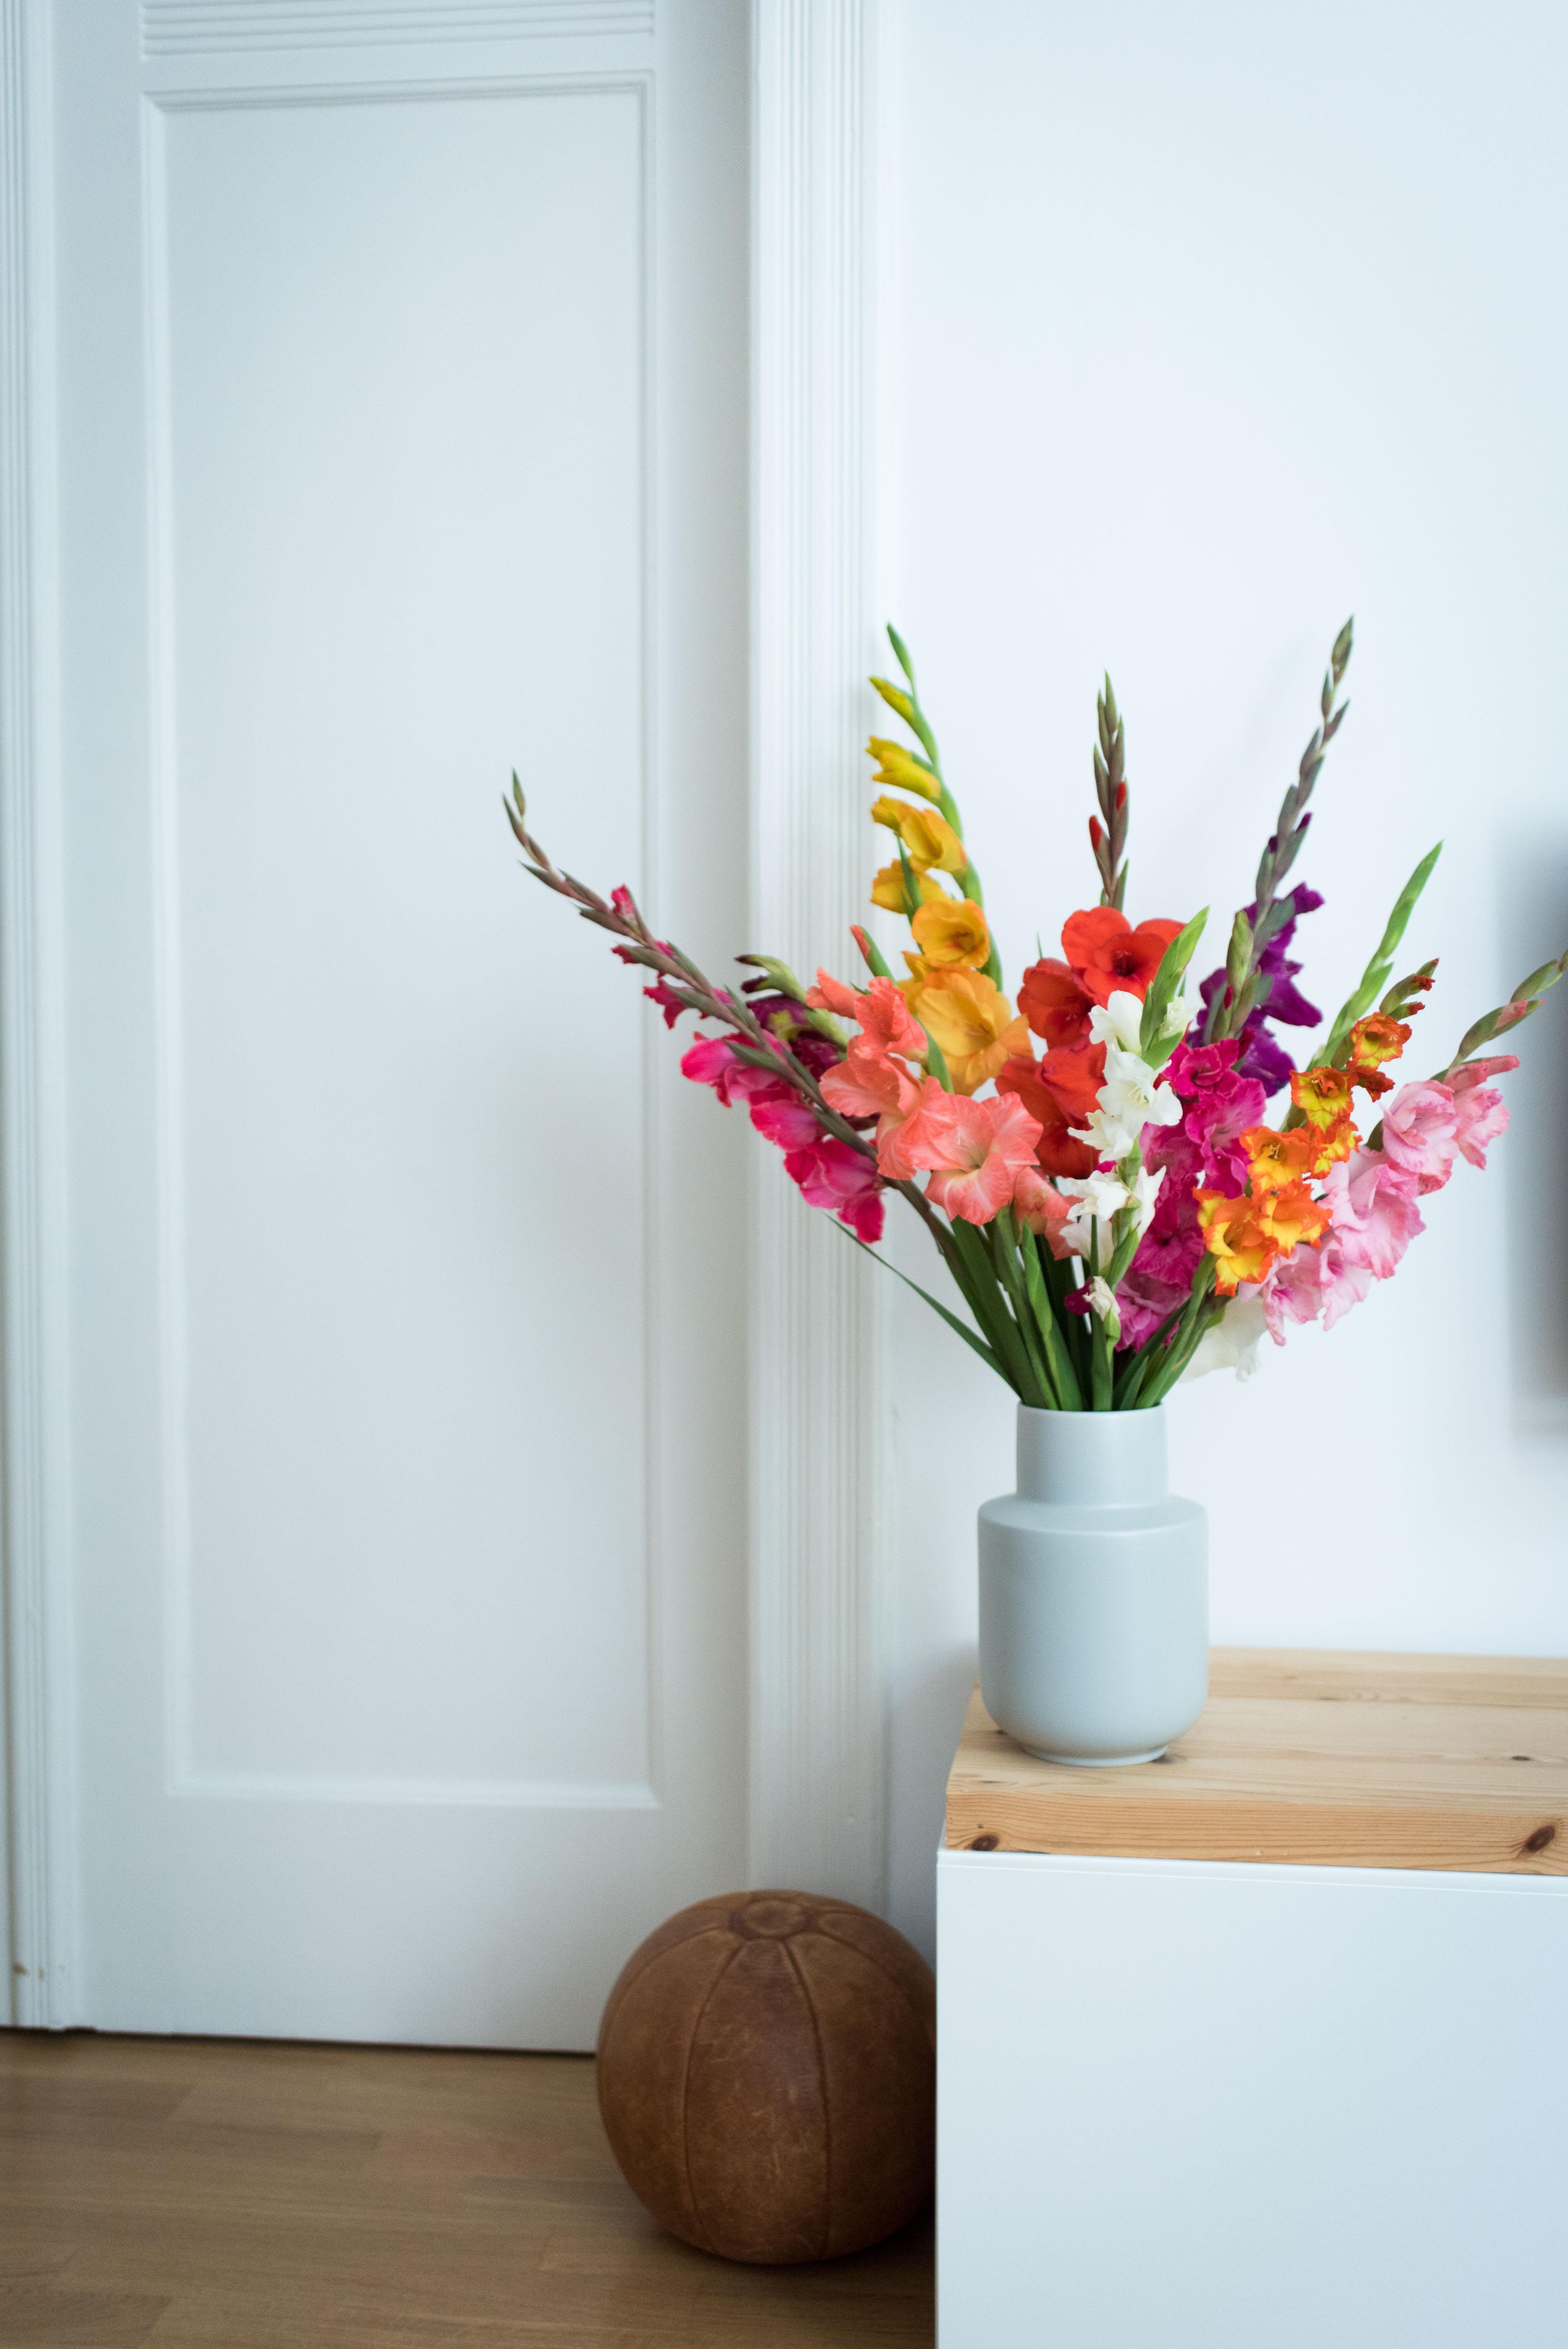 Gladiolenlibe für mehr Farbe! #freshflowers #altbauliebe #interior